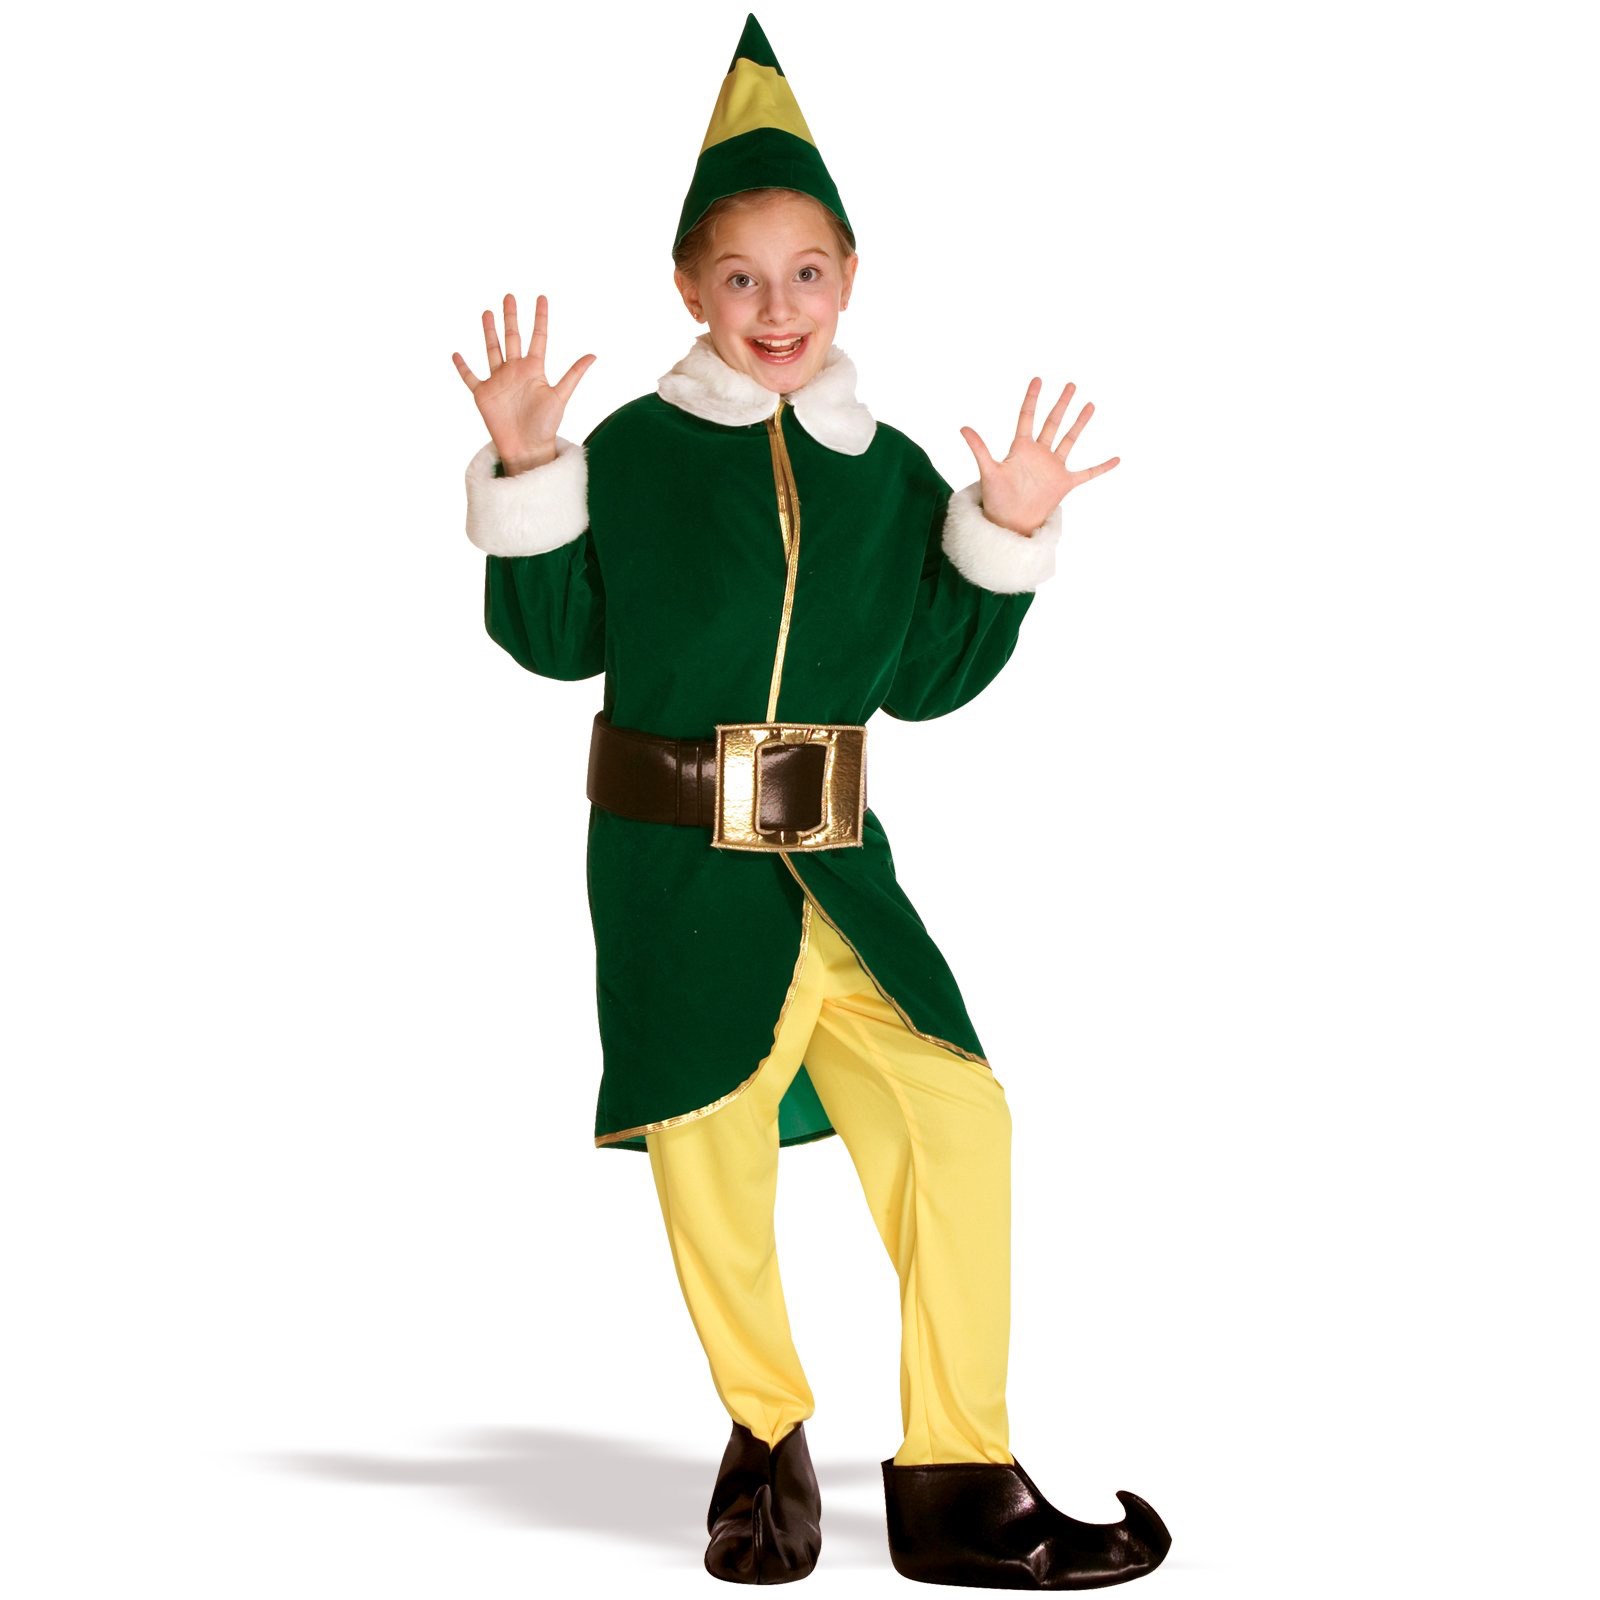 Elf Child Costume